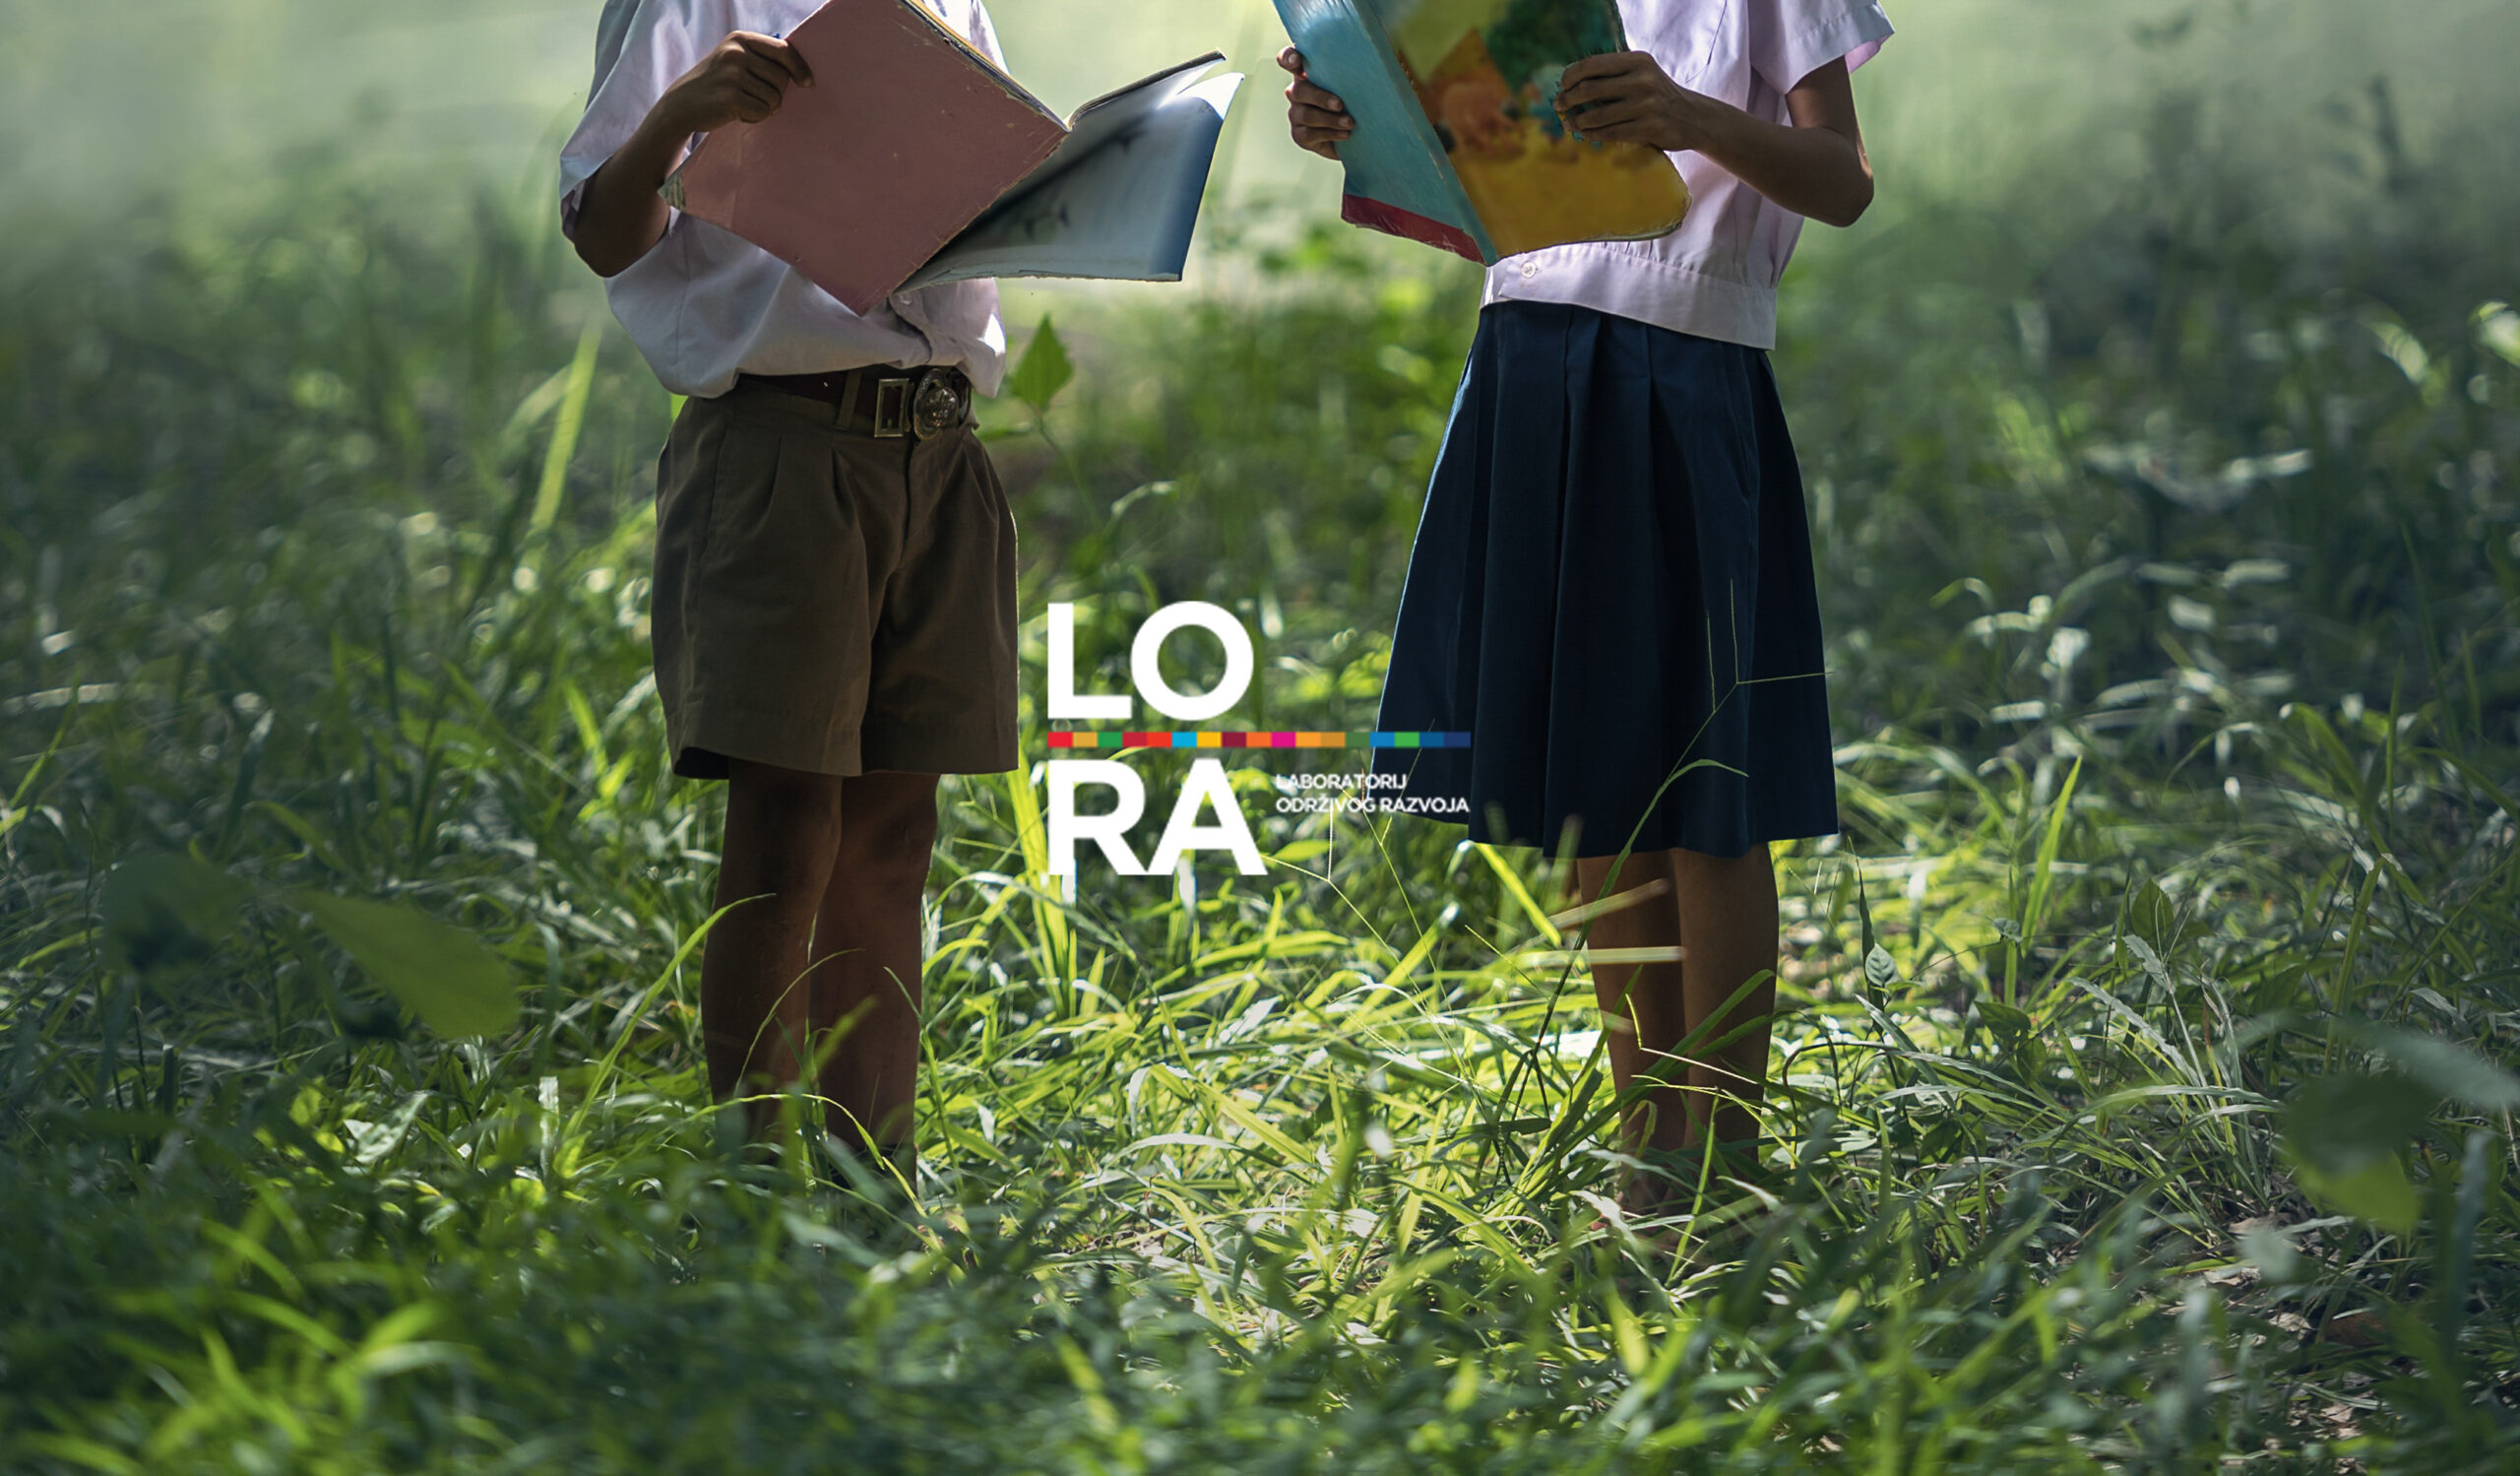 Odabrani najbolji učenički projekti održivog razvoja u sklopu projekta LORA